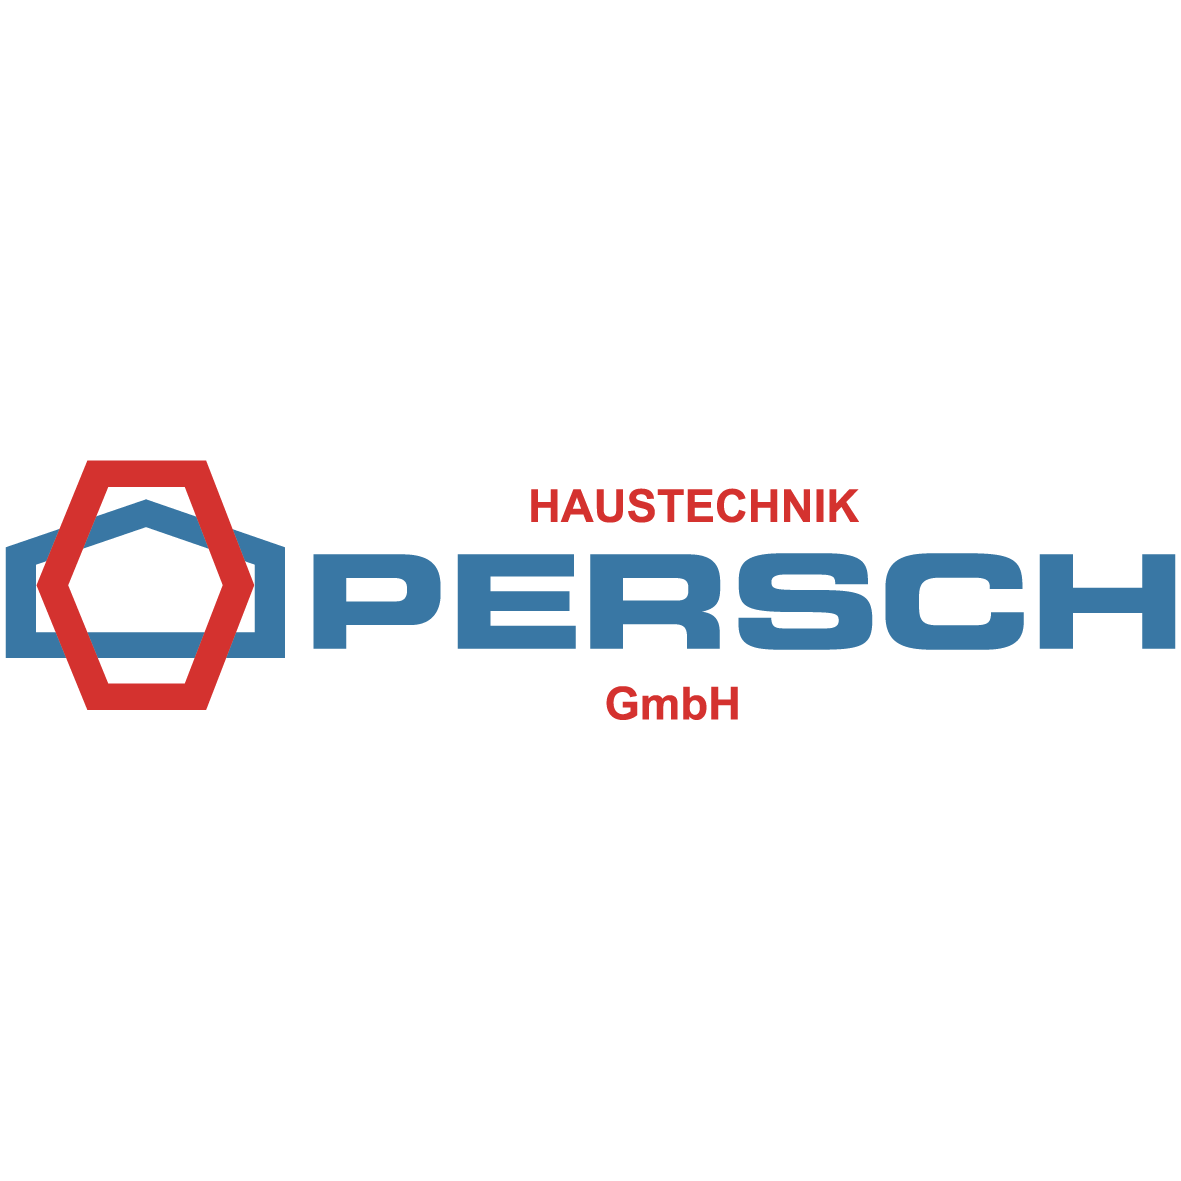 Haustechnik Persch GmbH in Kassel - Logo